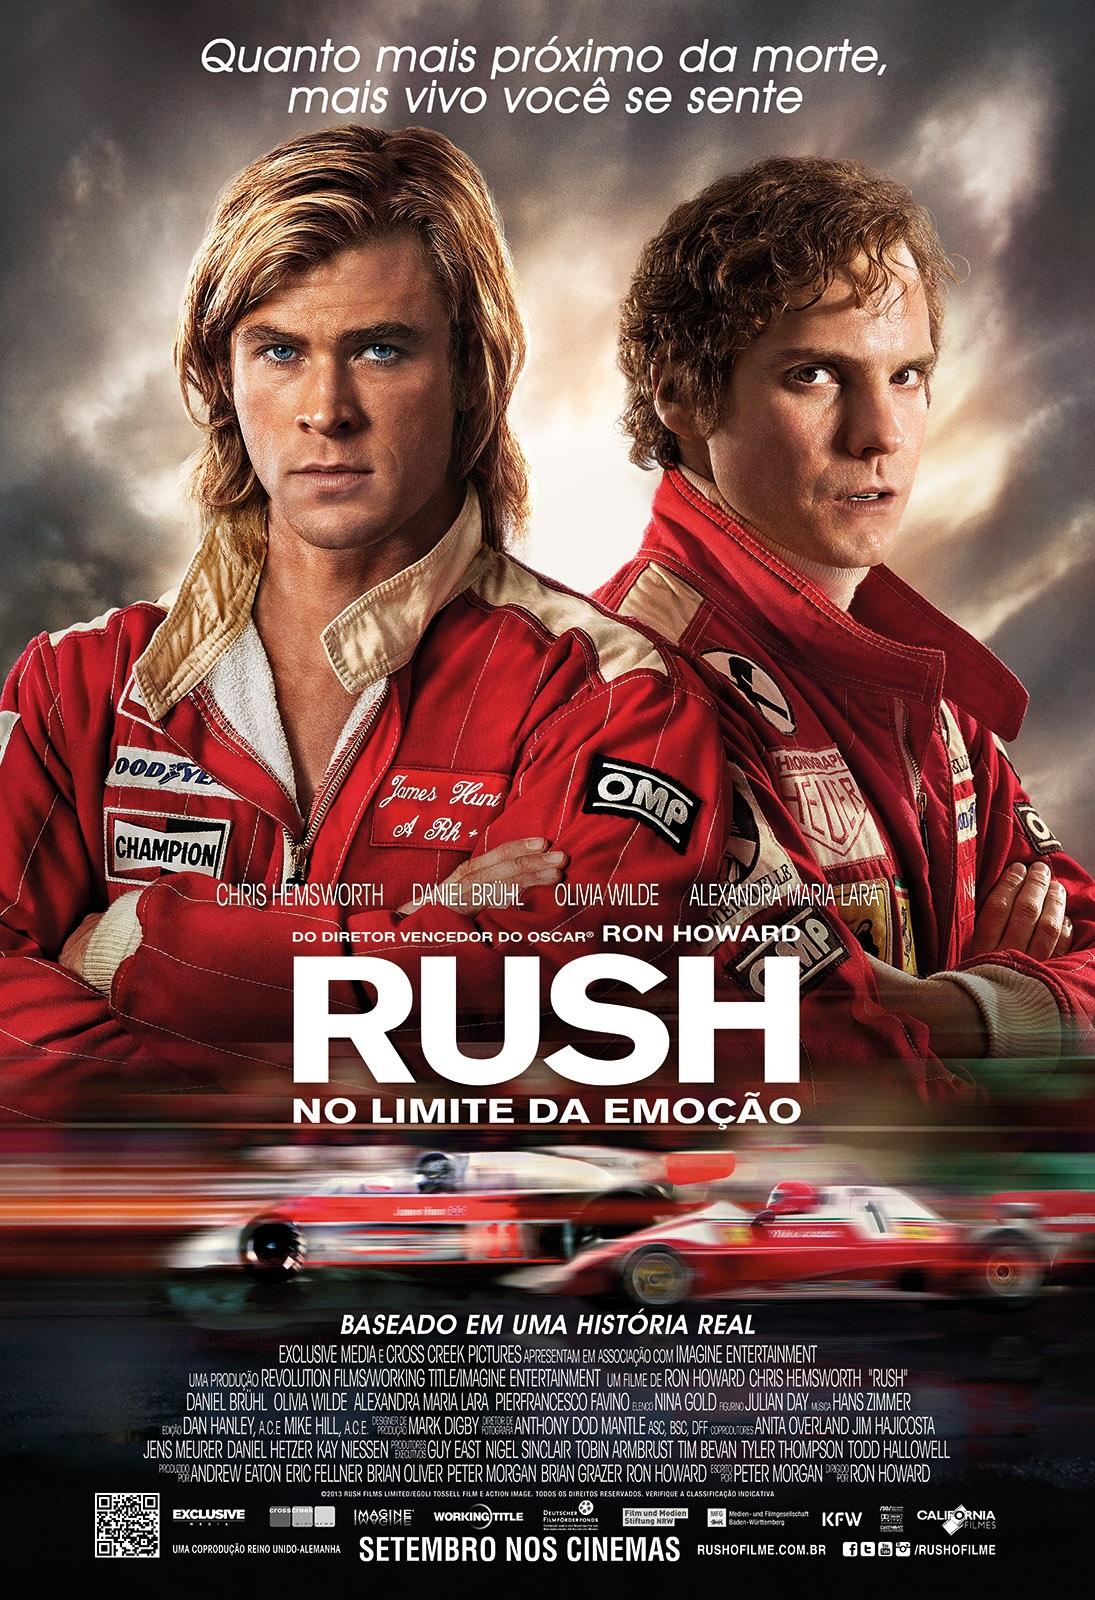 ‘Rush: no limite da emoção’ (2013) é um filme baseado na rivalidade entre Niki Lauda e James Hunt na temporada de 1976 da Fórmula 1. Os intérpretes dos pilotos são de Daniel Brühl e Chris Hemsworth, respectivamente.